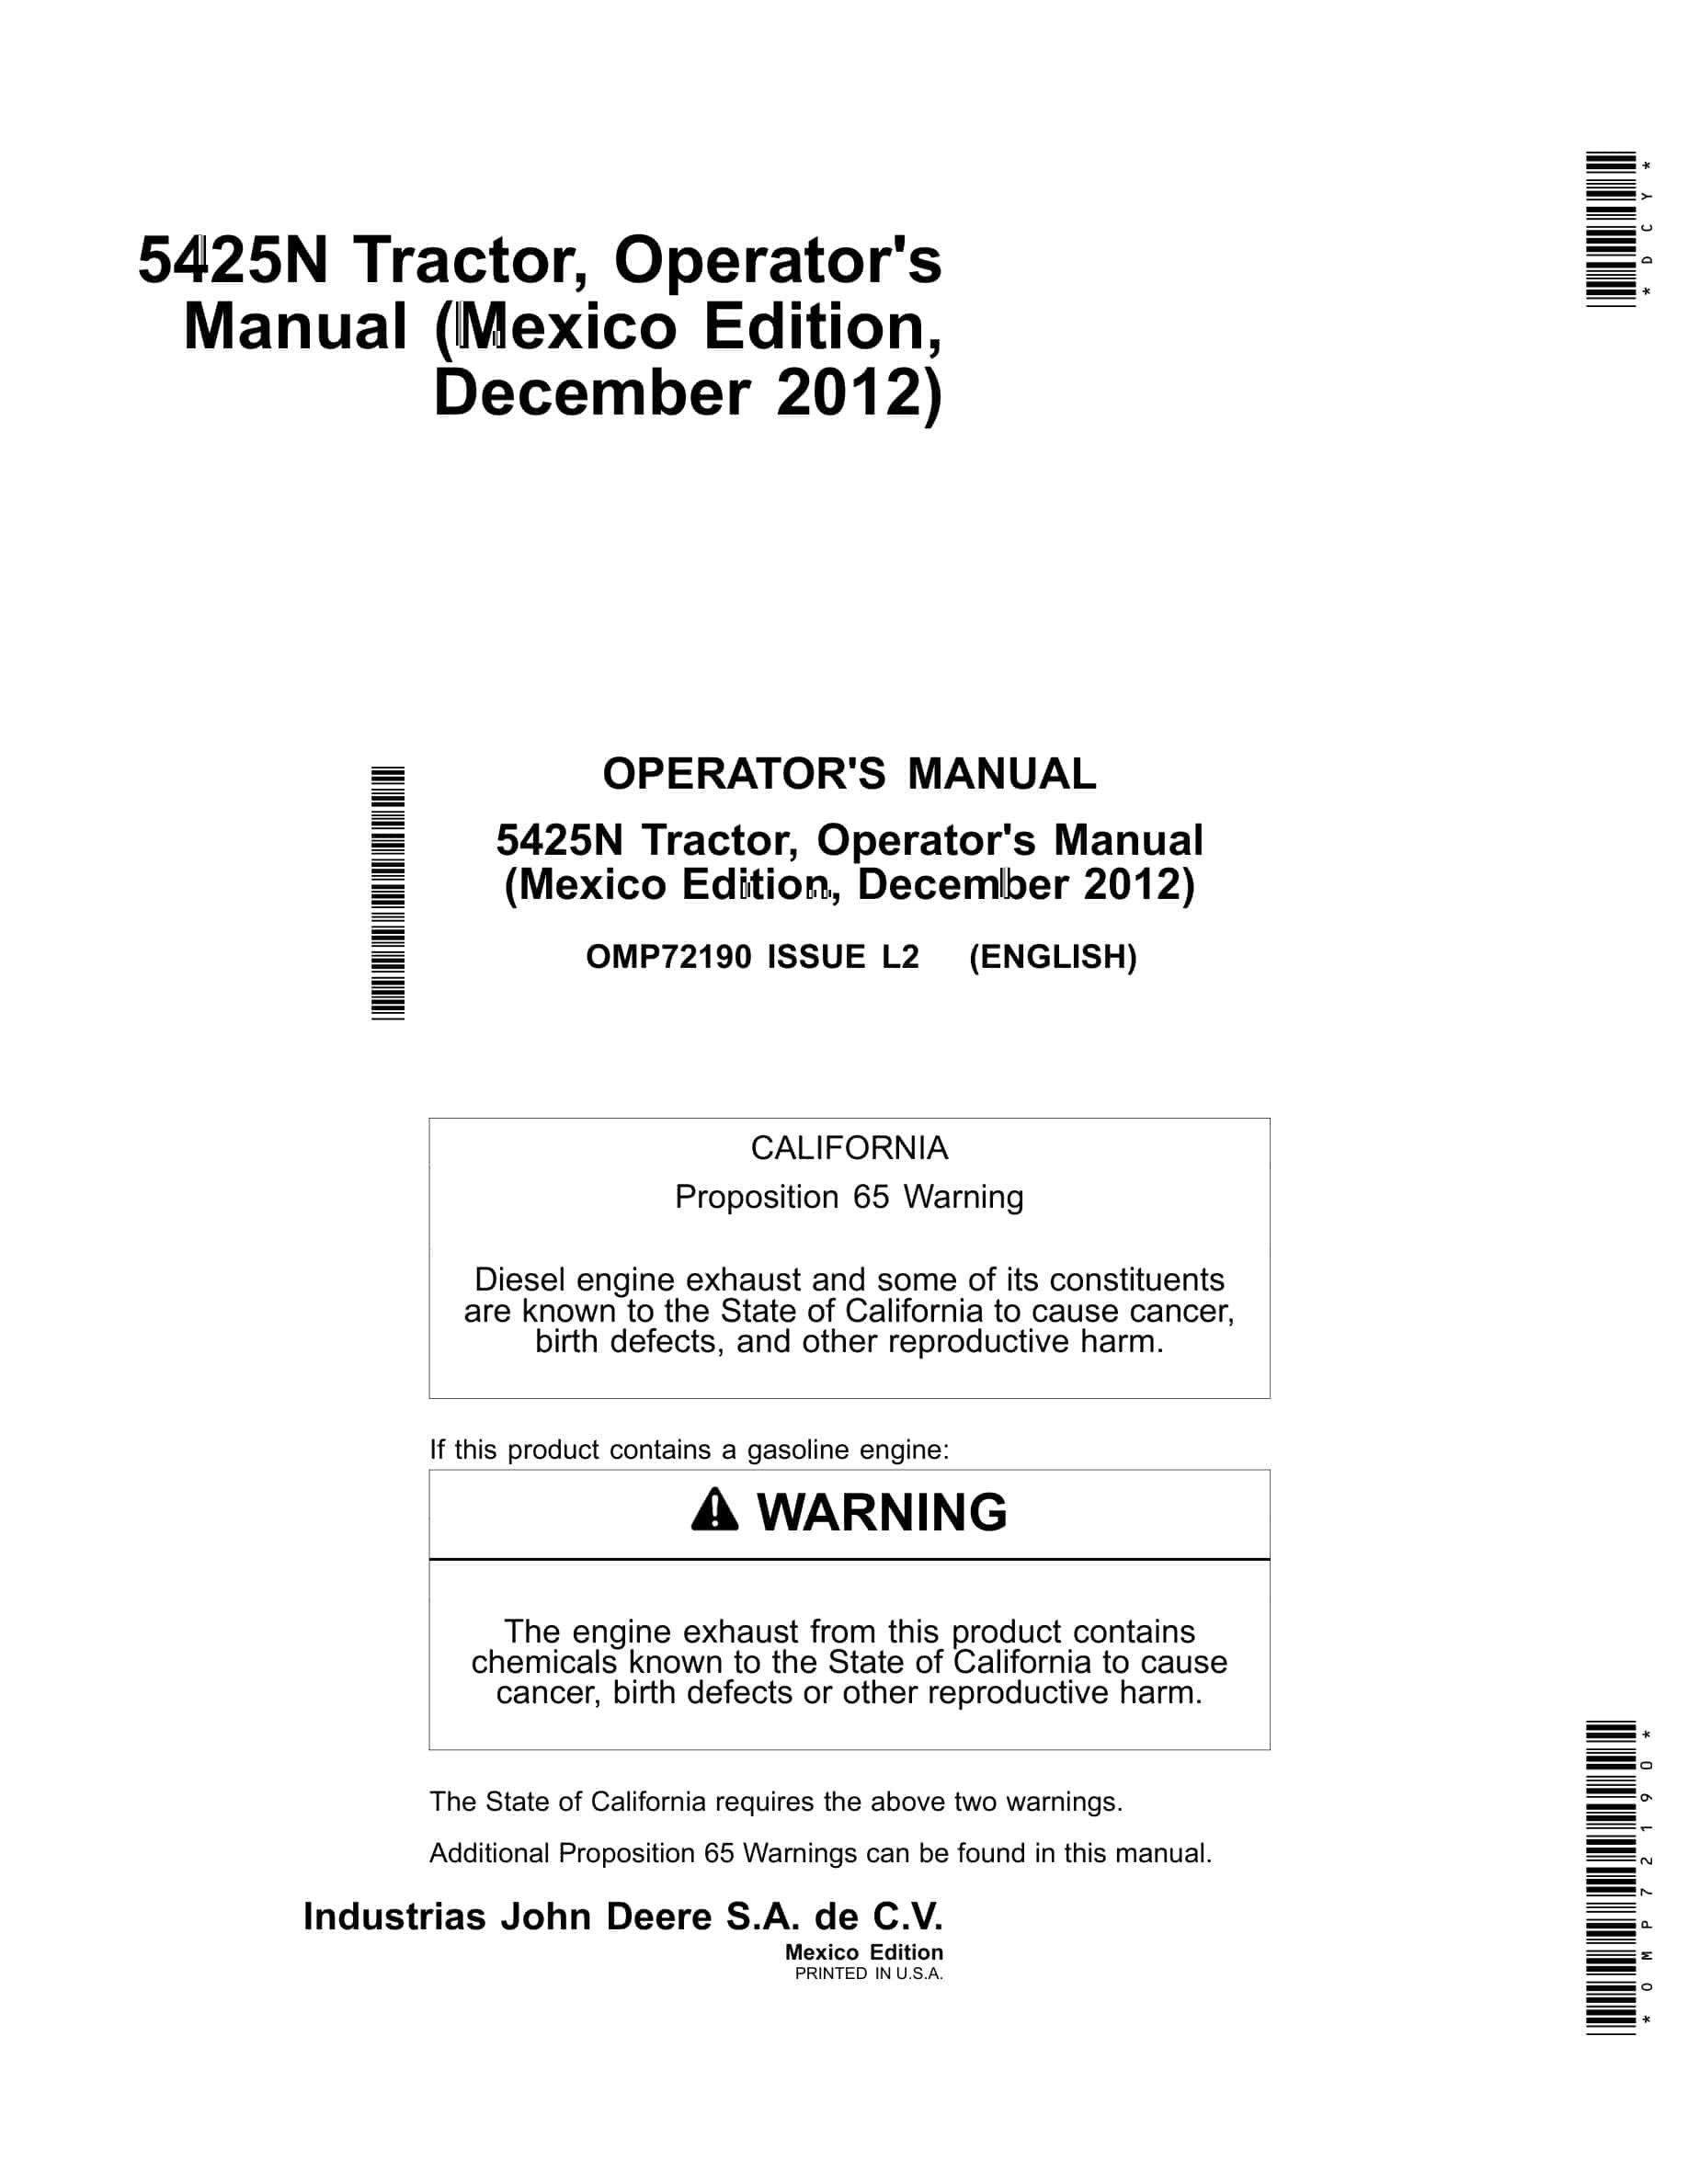 John Deere 5425n Tractors Operator Manual OMP72190-1